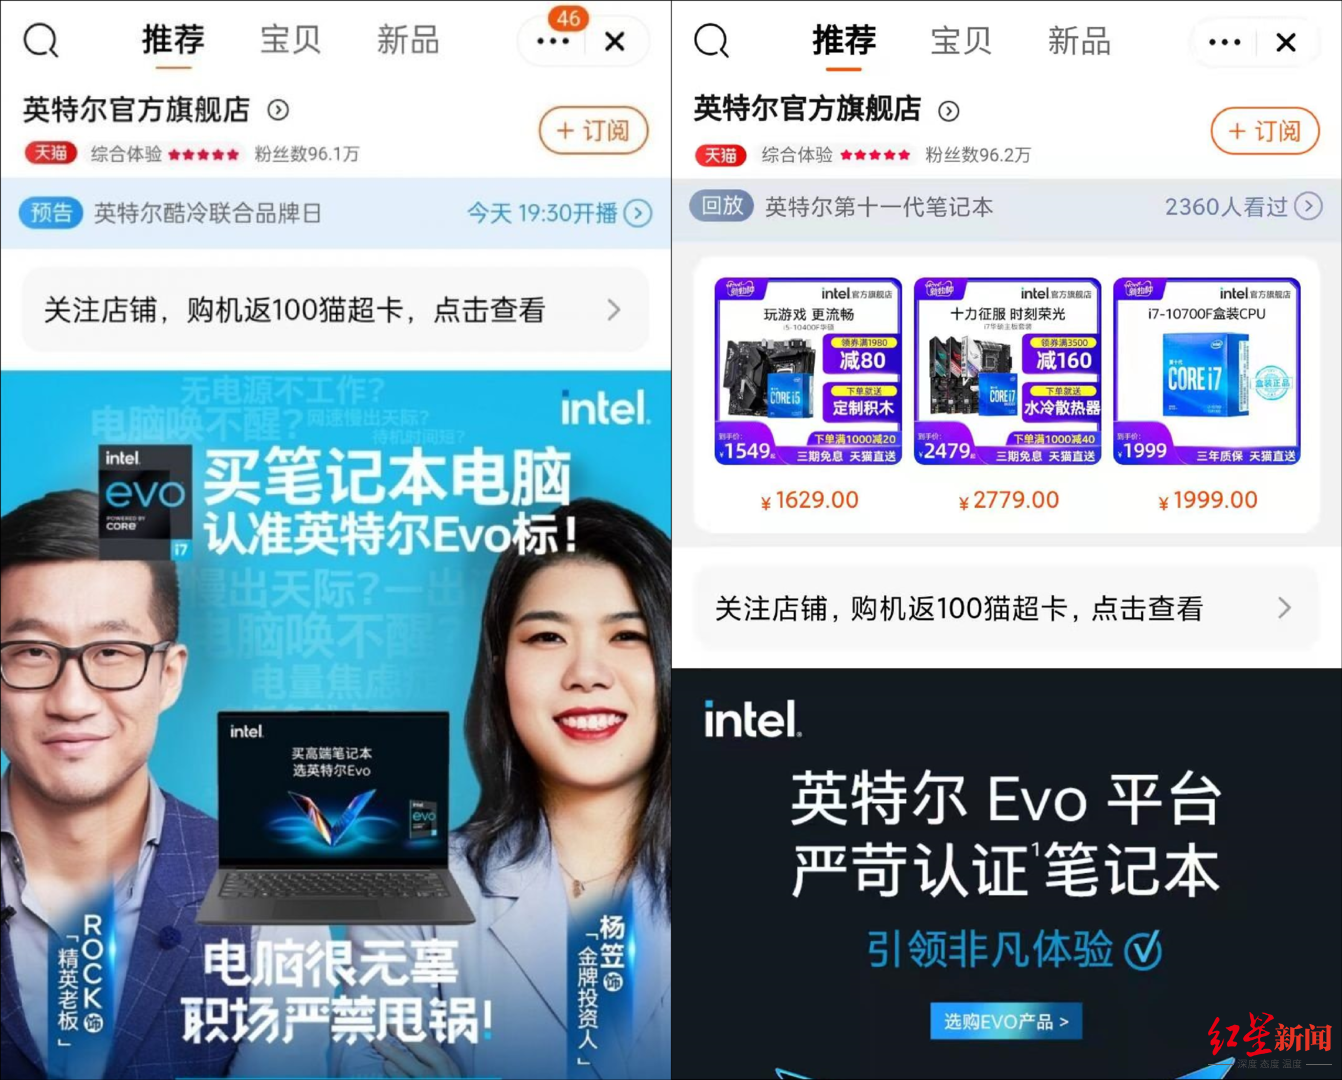 Intel of Yang Li acting character cites dispute, intel removes information of next its Dai Yan